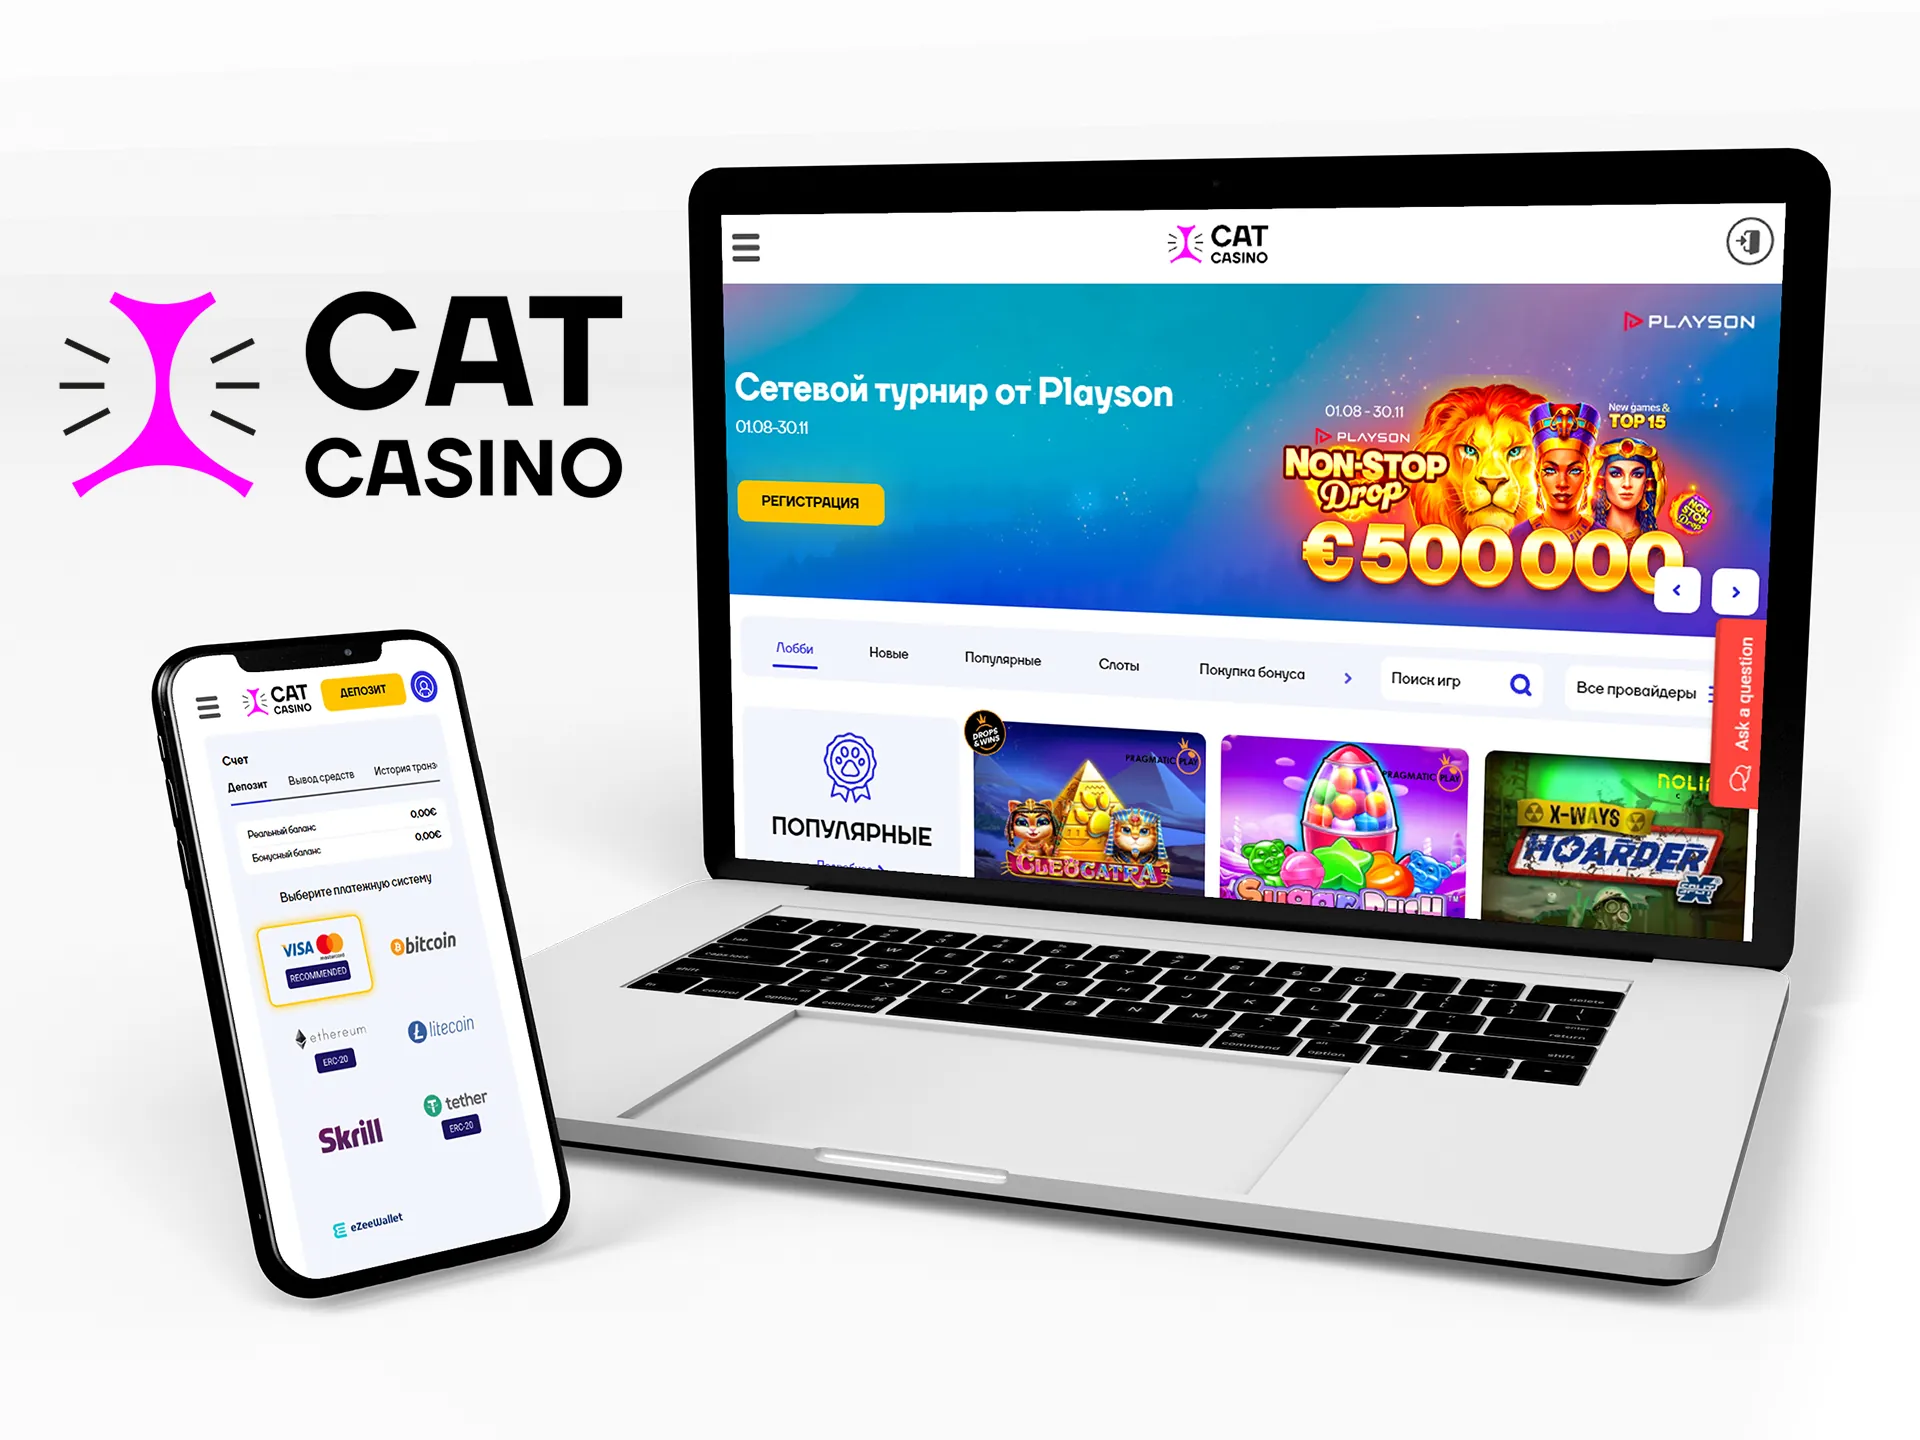 Приложение Cat Casino предоставляет полный спектр услуг